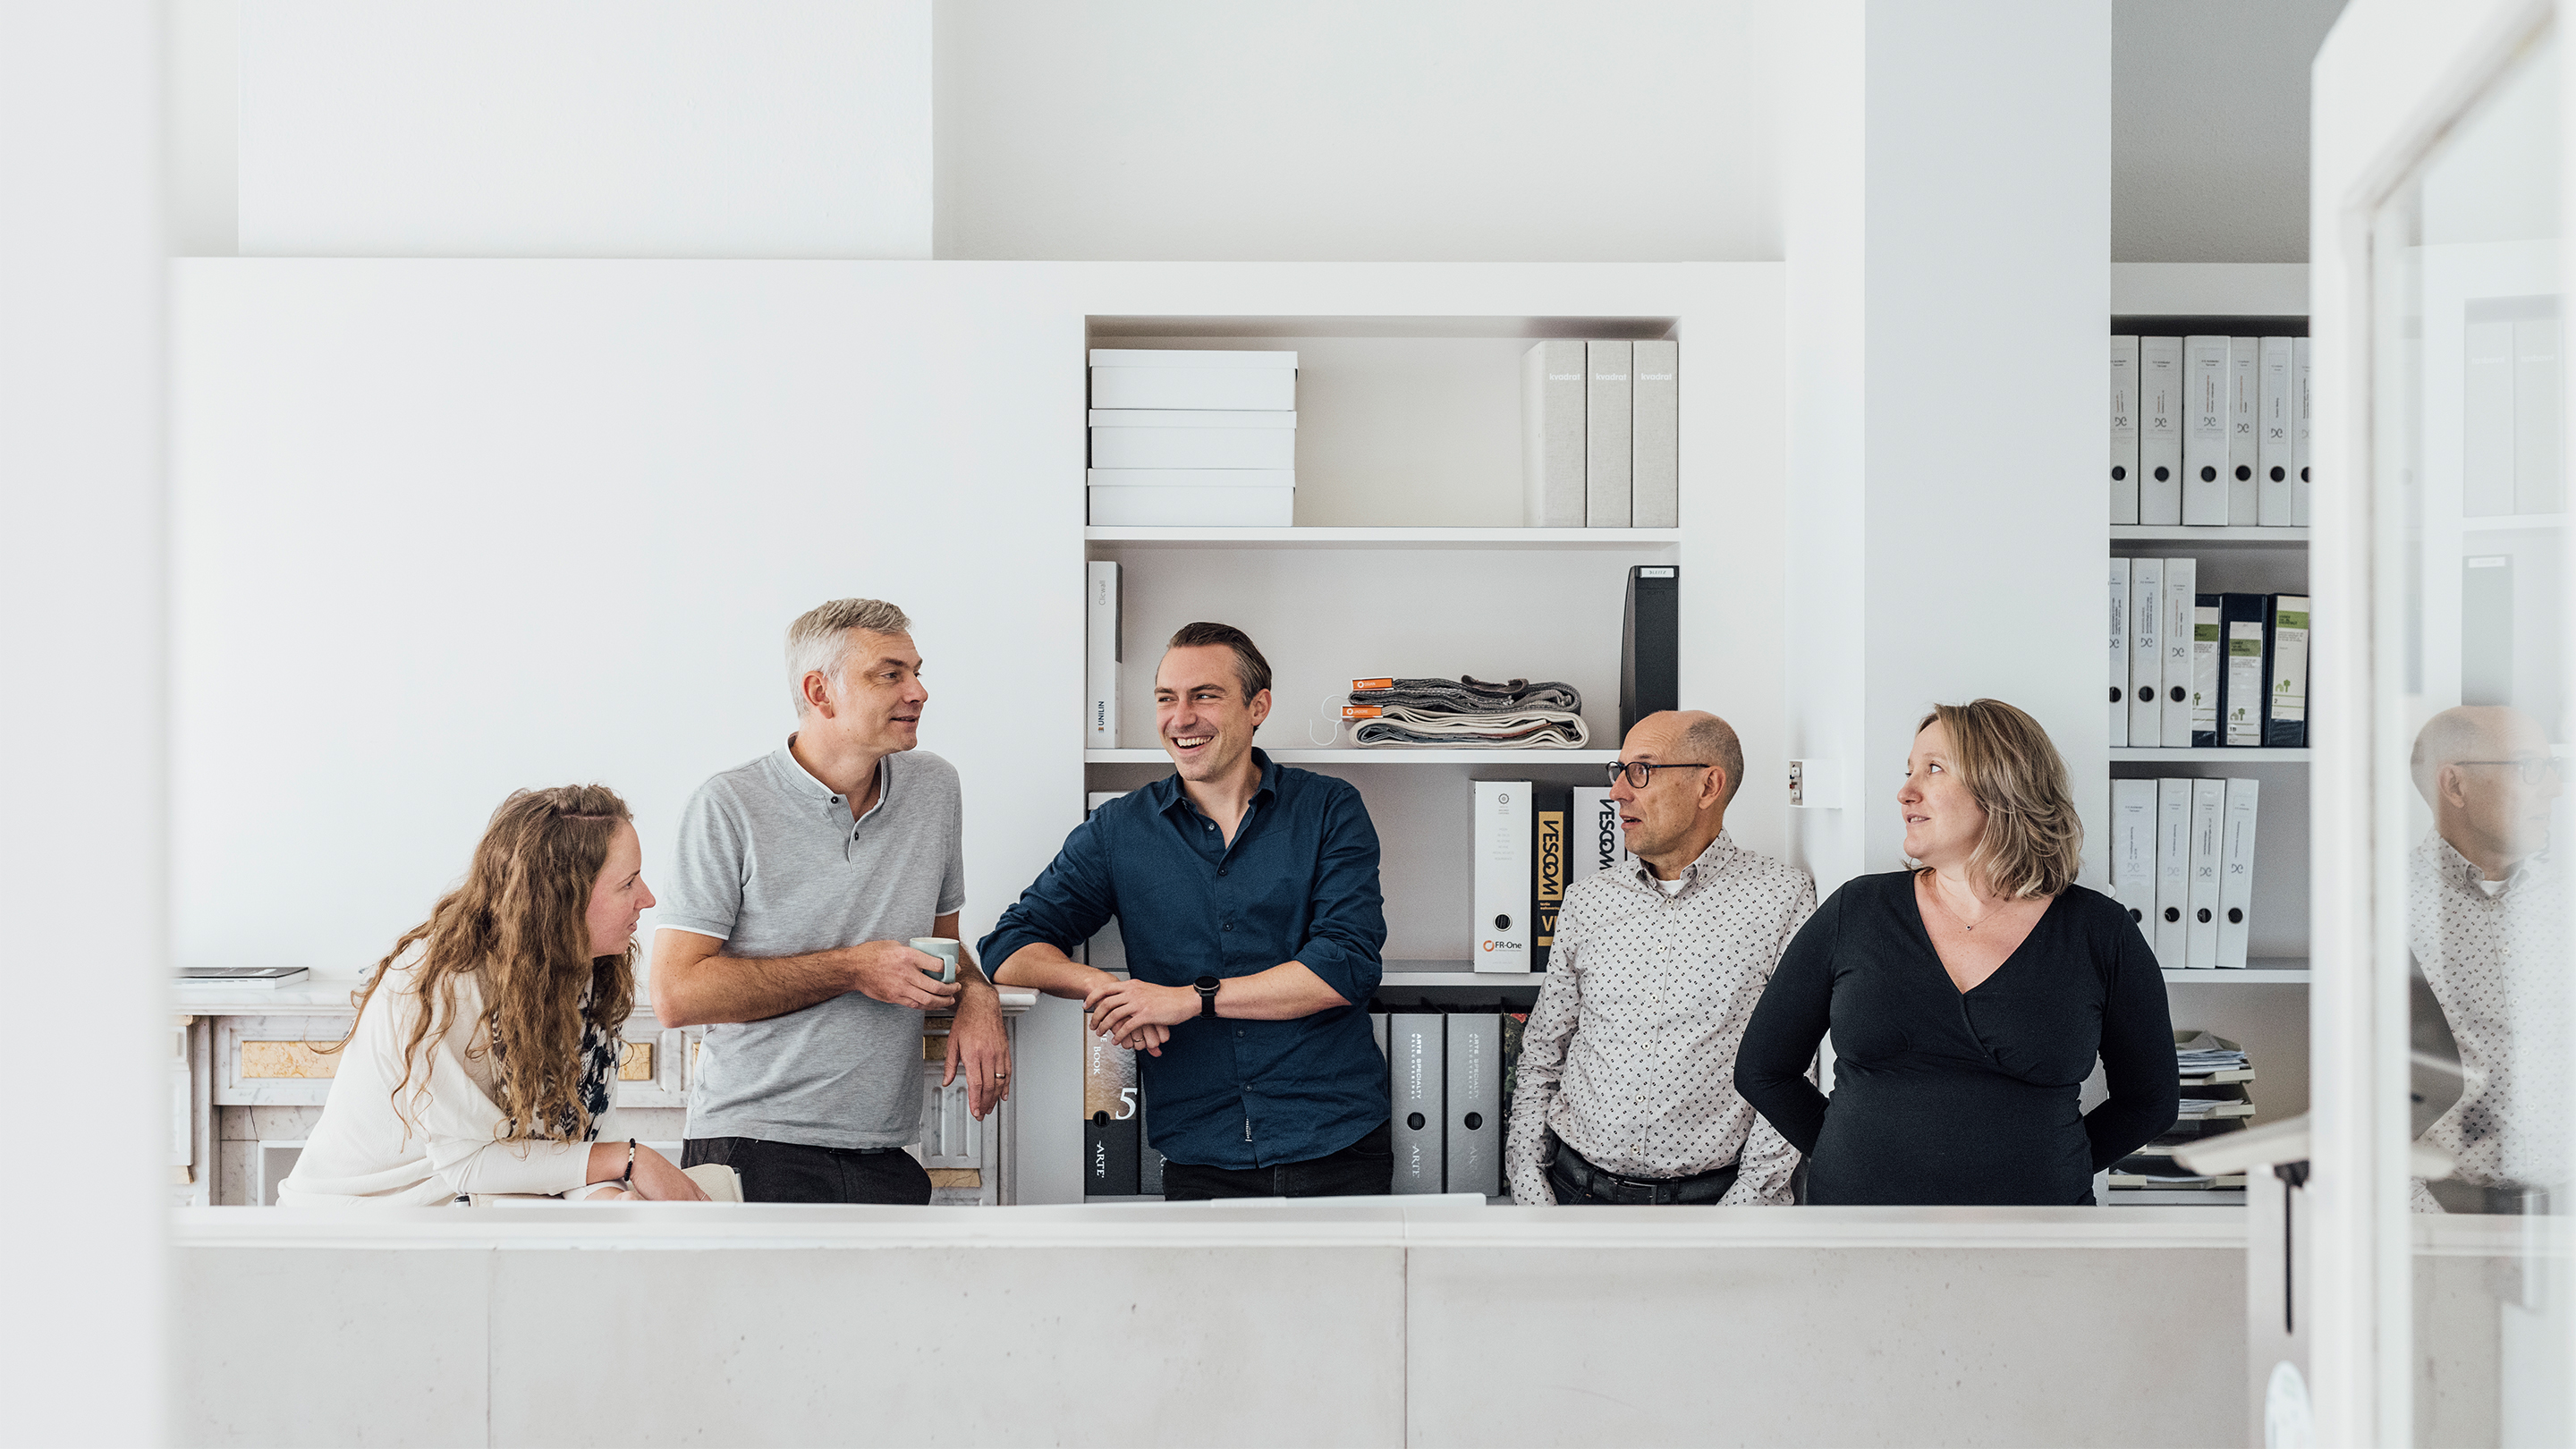 Het architecten team van studio WAAGA met Sofie Van Den Bosch, Tom Eckelmans, Koen Coomans, Bart Doms en Ellen Cochez